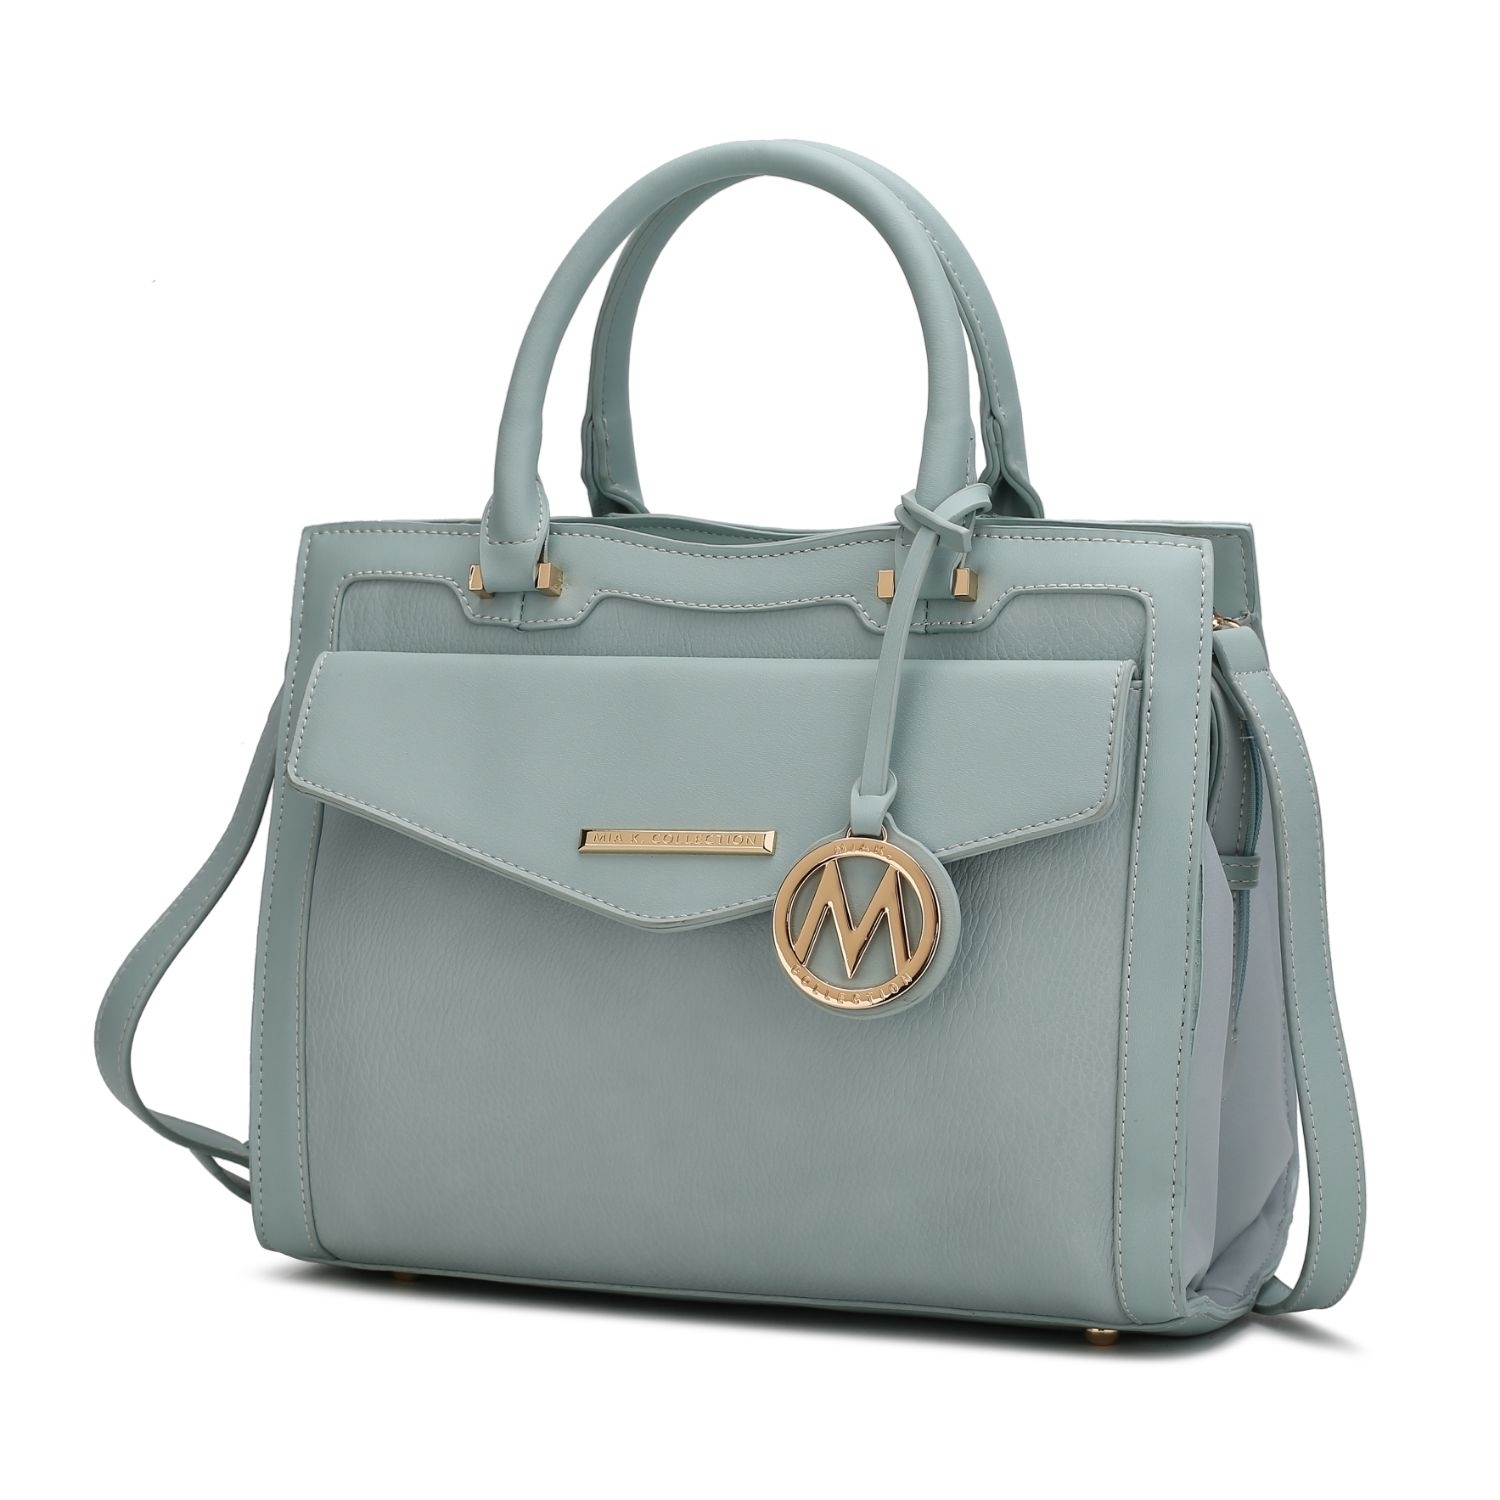 MKF Collection Alyssa Satchel Handbag By Mia K. - Seafoam